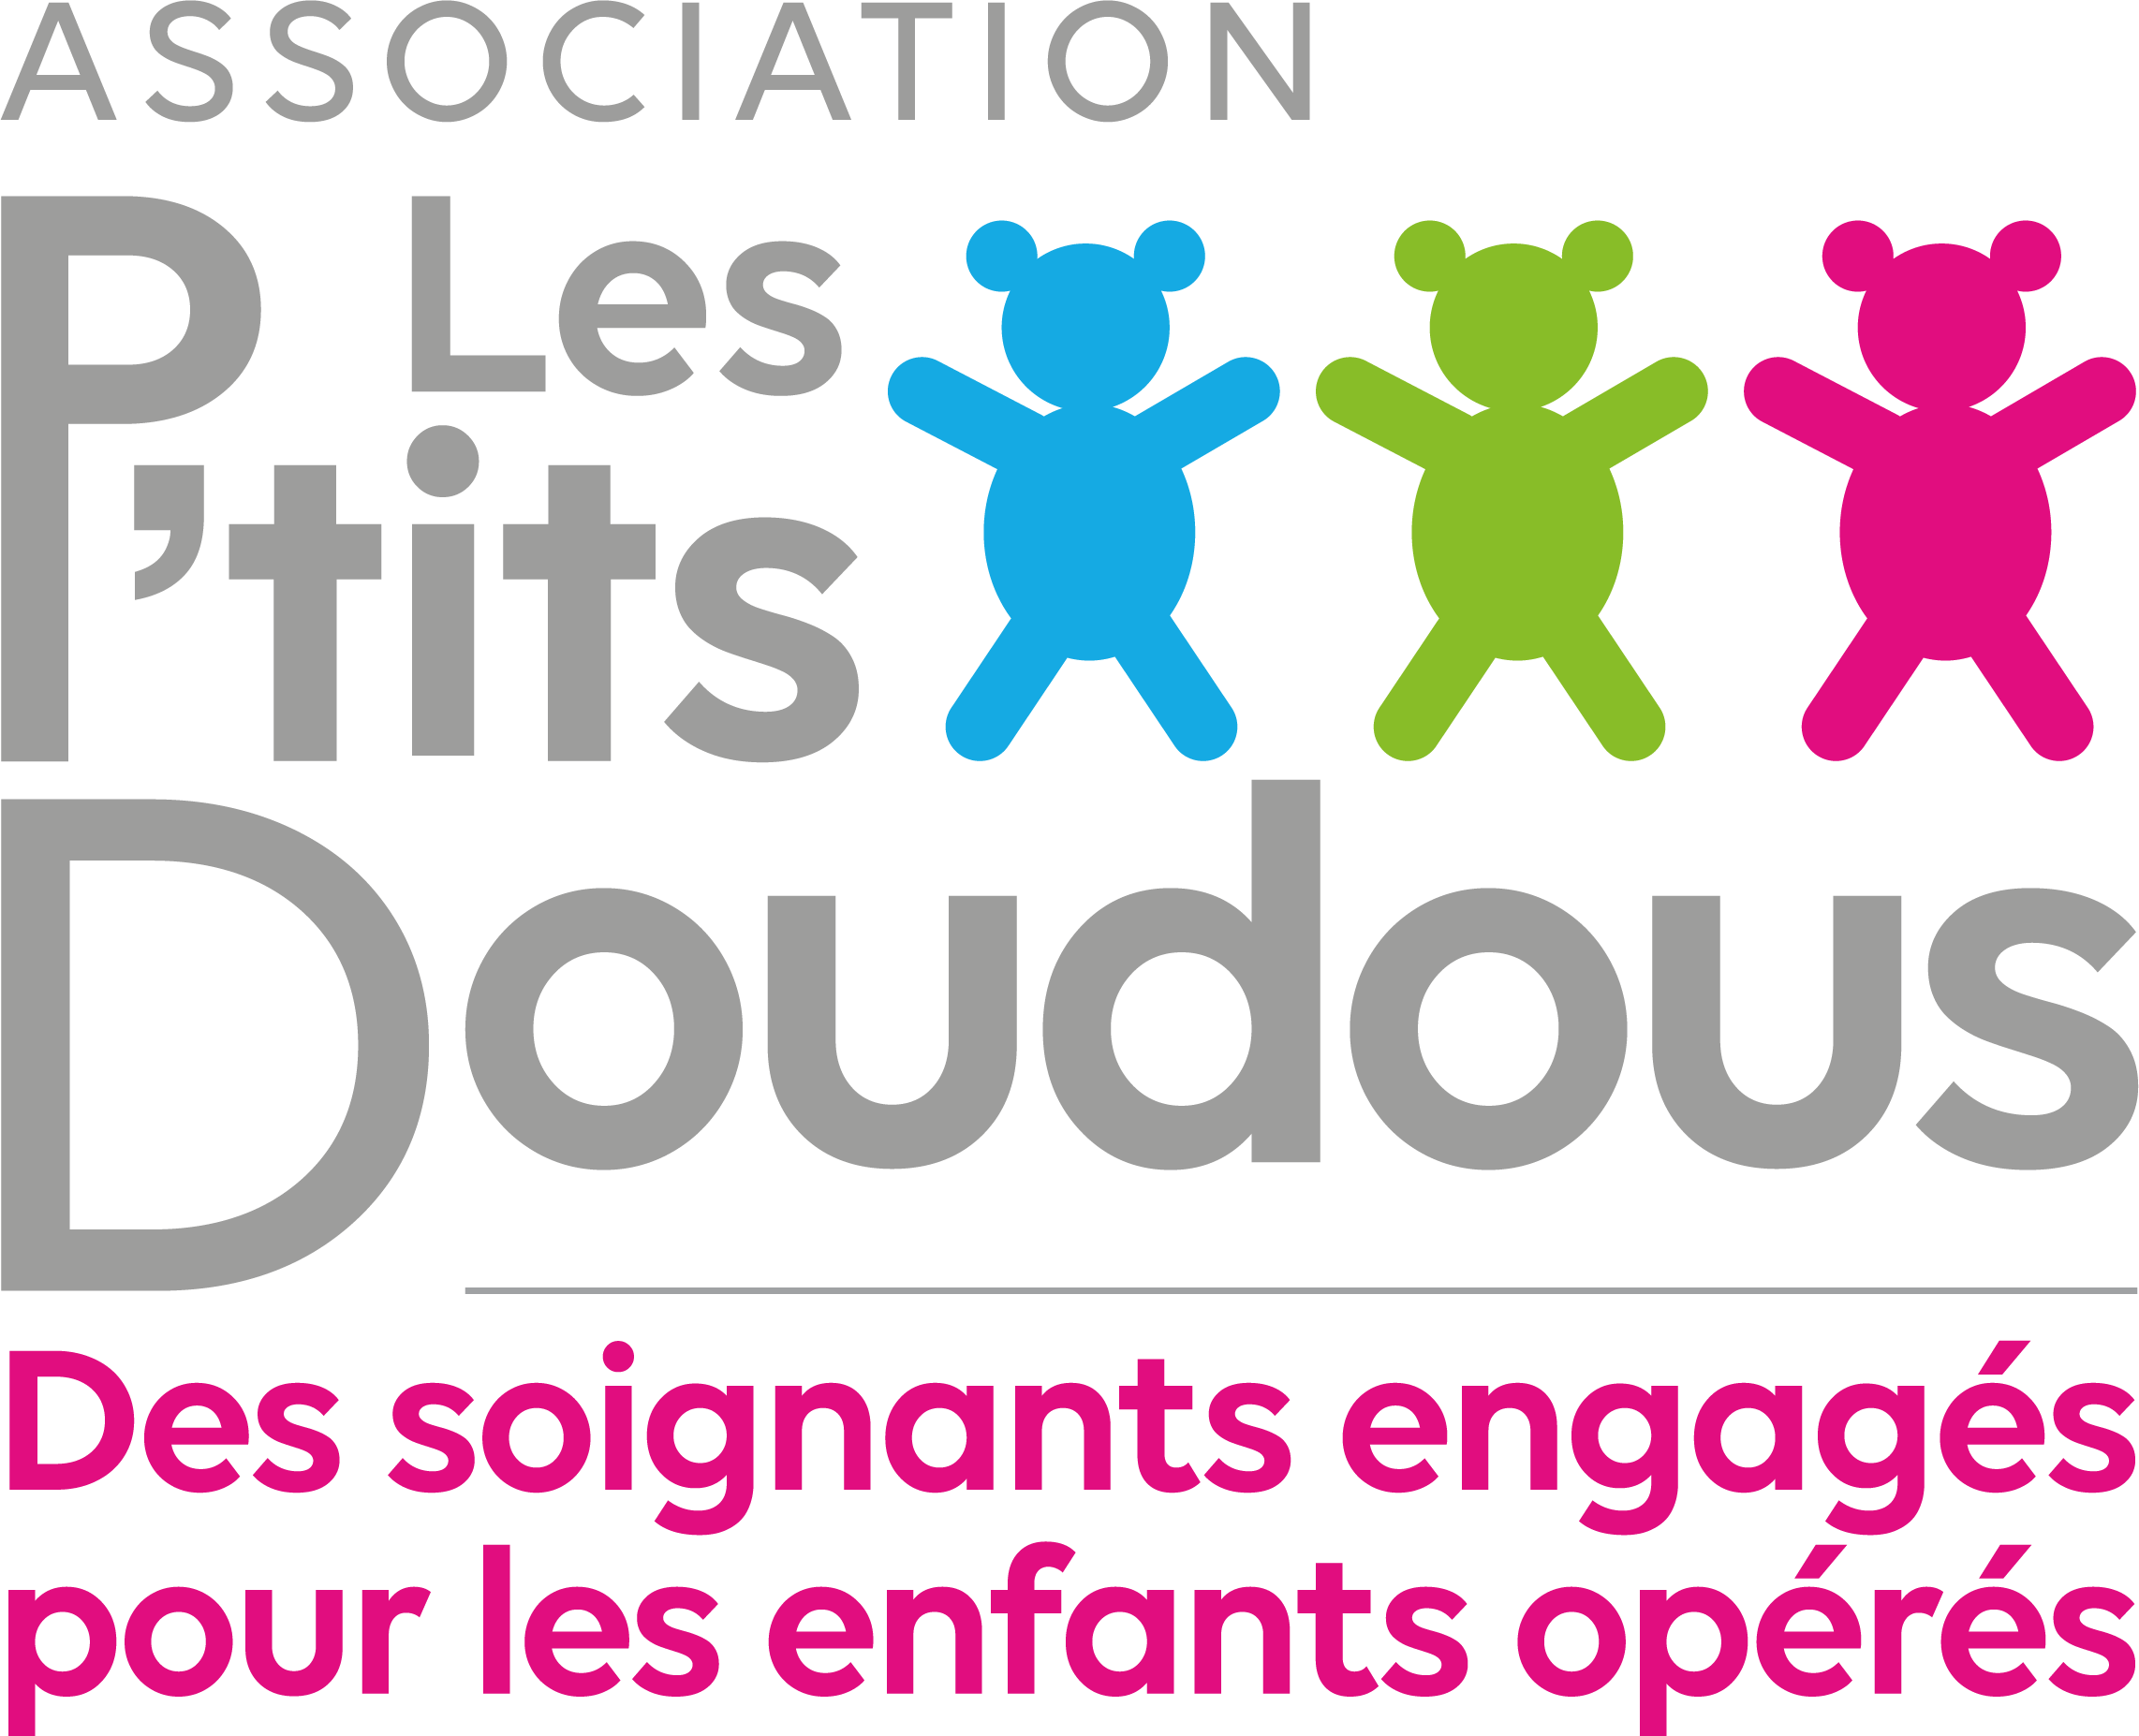 Création de l'association nationale "Les P'tits Doudous"